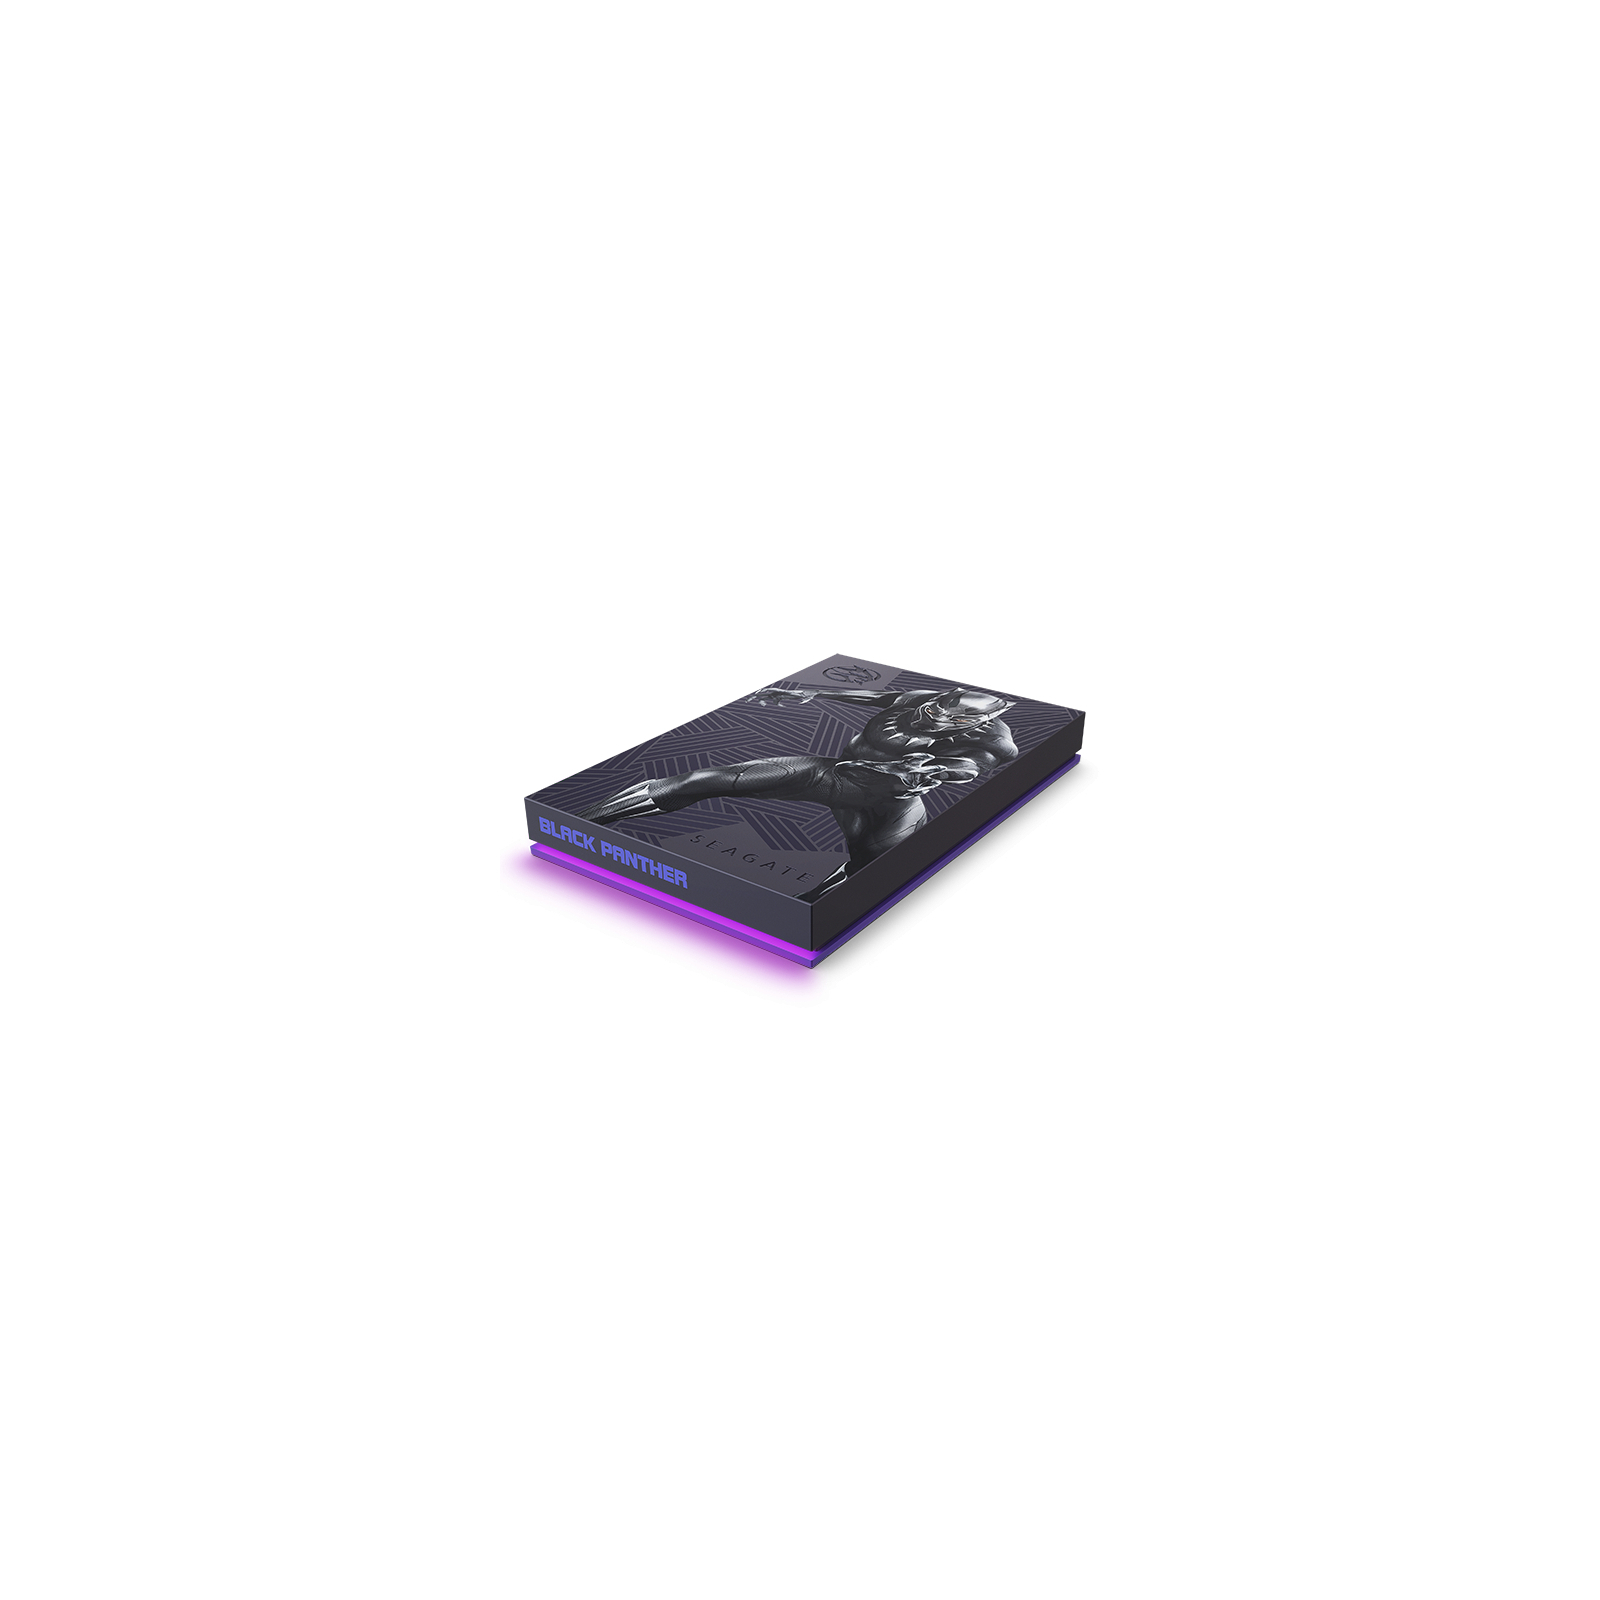 Внешний жесткий диск 2.5" 2TB Black Panther FireCuda Gaming Drive Seagate (STLX2000401) изображение 3